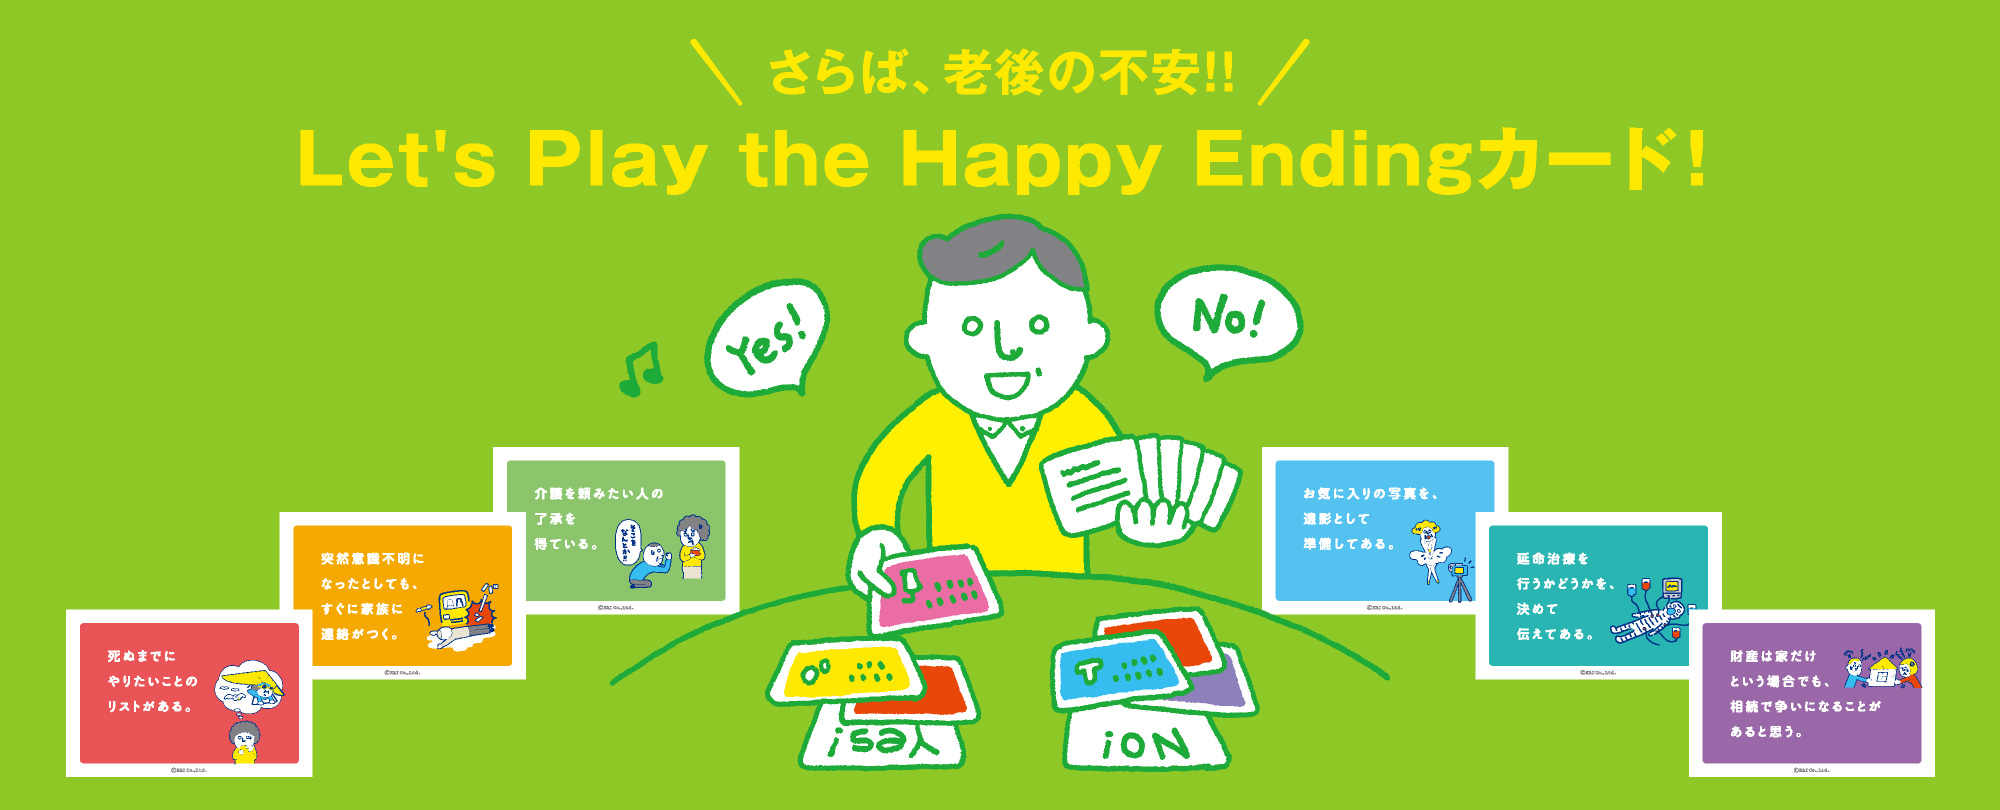 Happy Endingカード